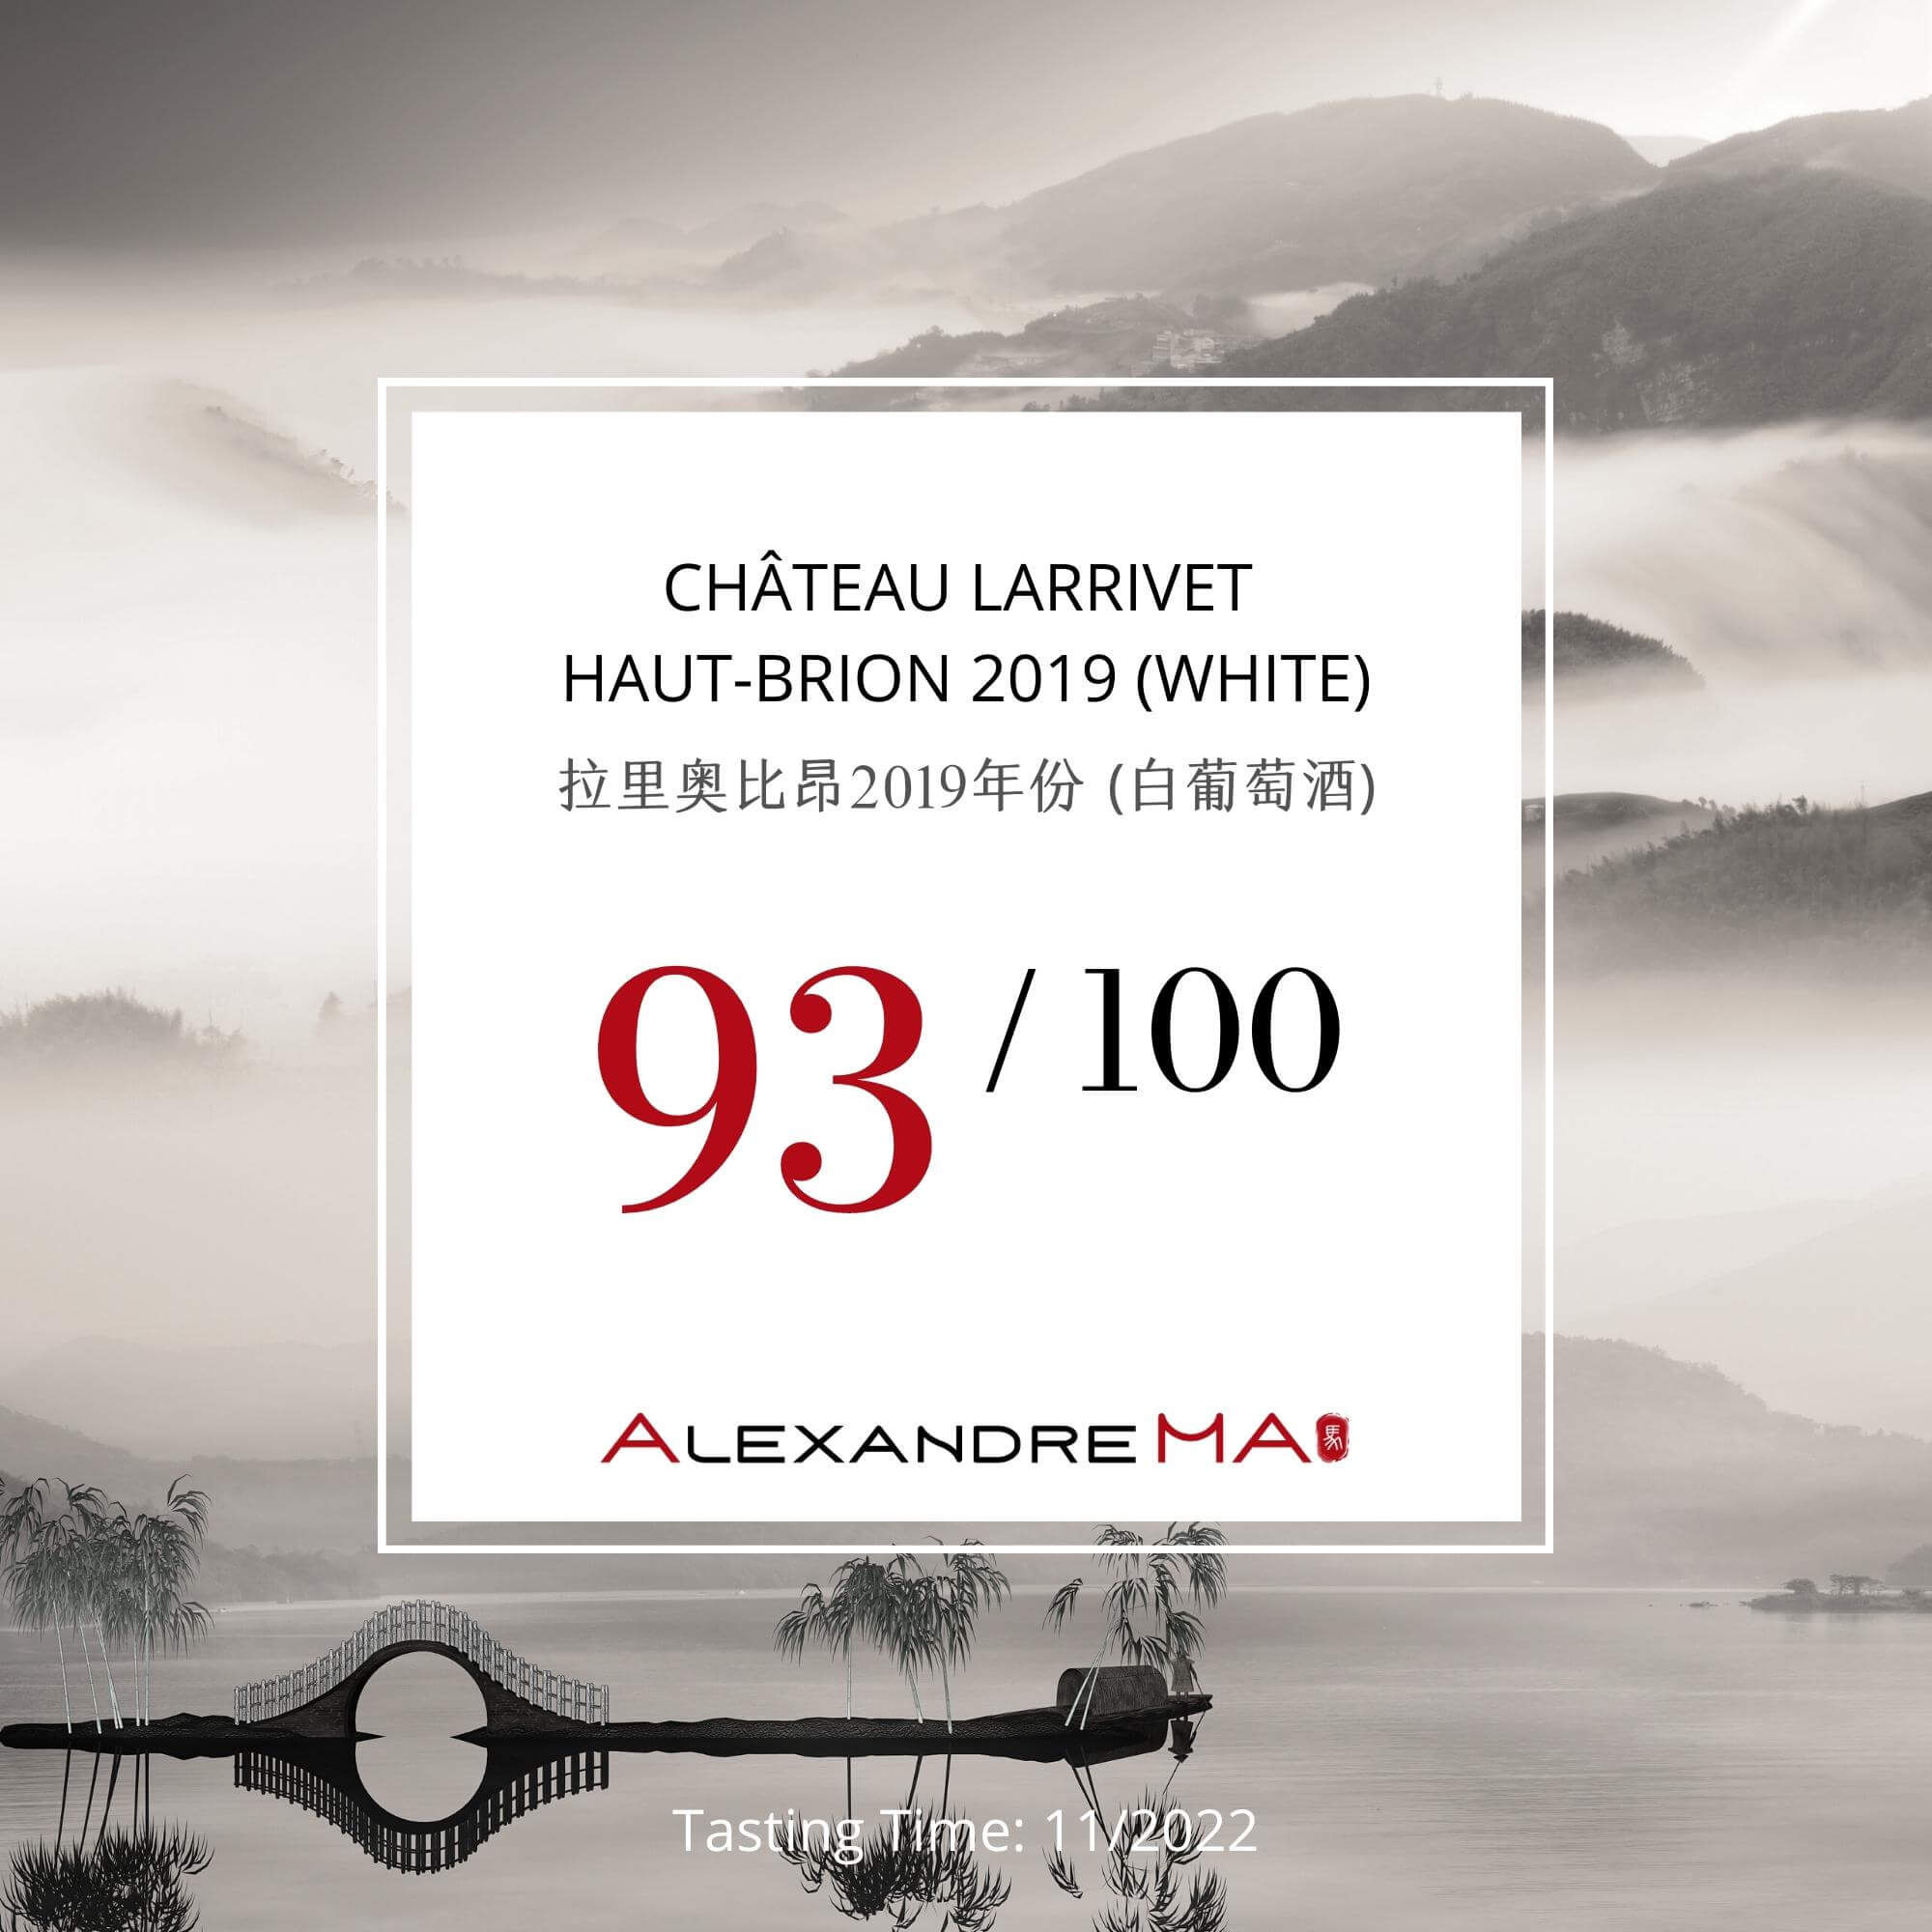 Château Larrivet Haut-Brion 2019-White - Alexandre MA